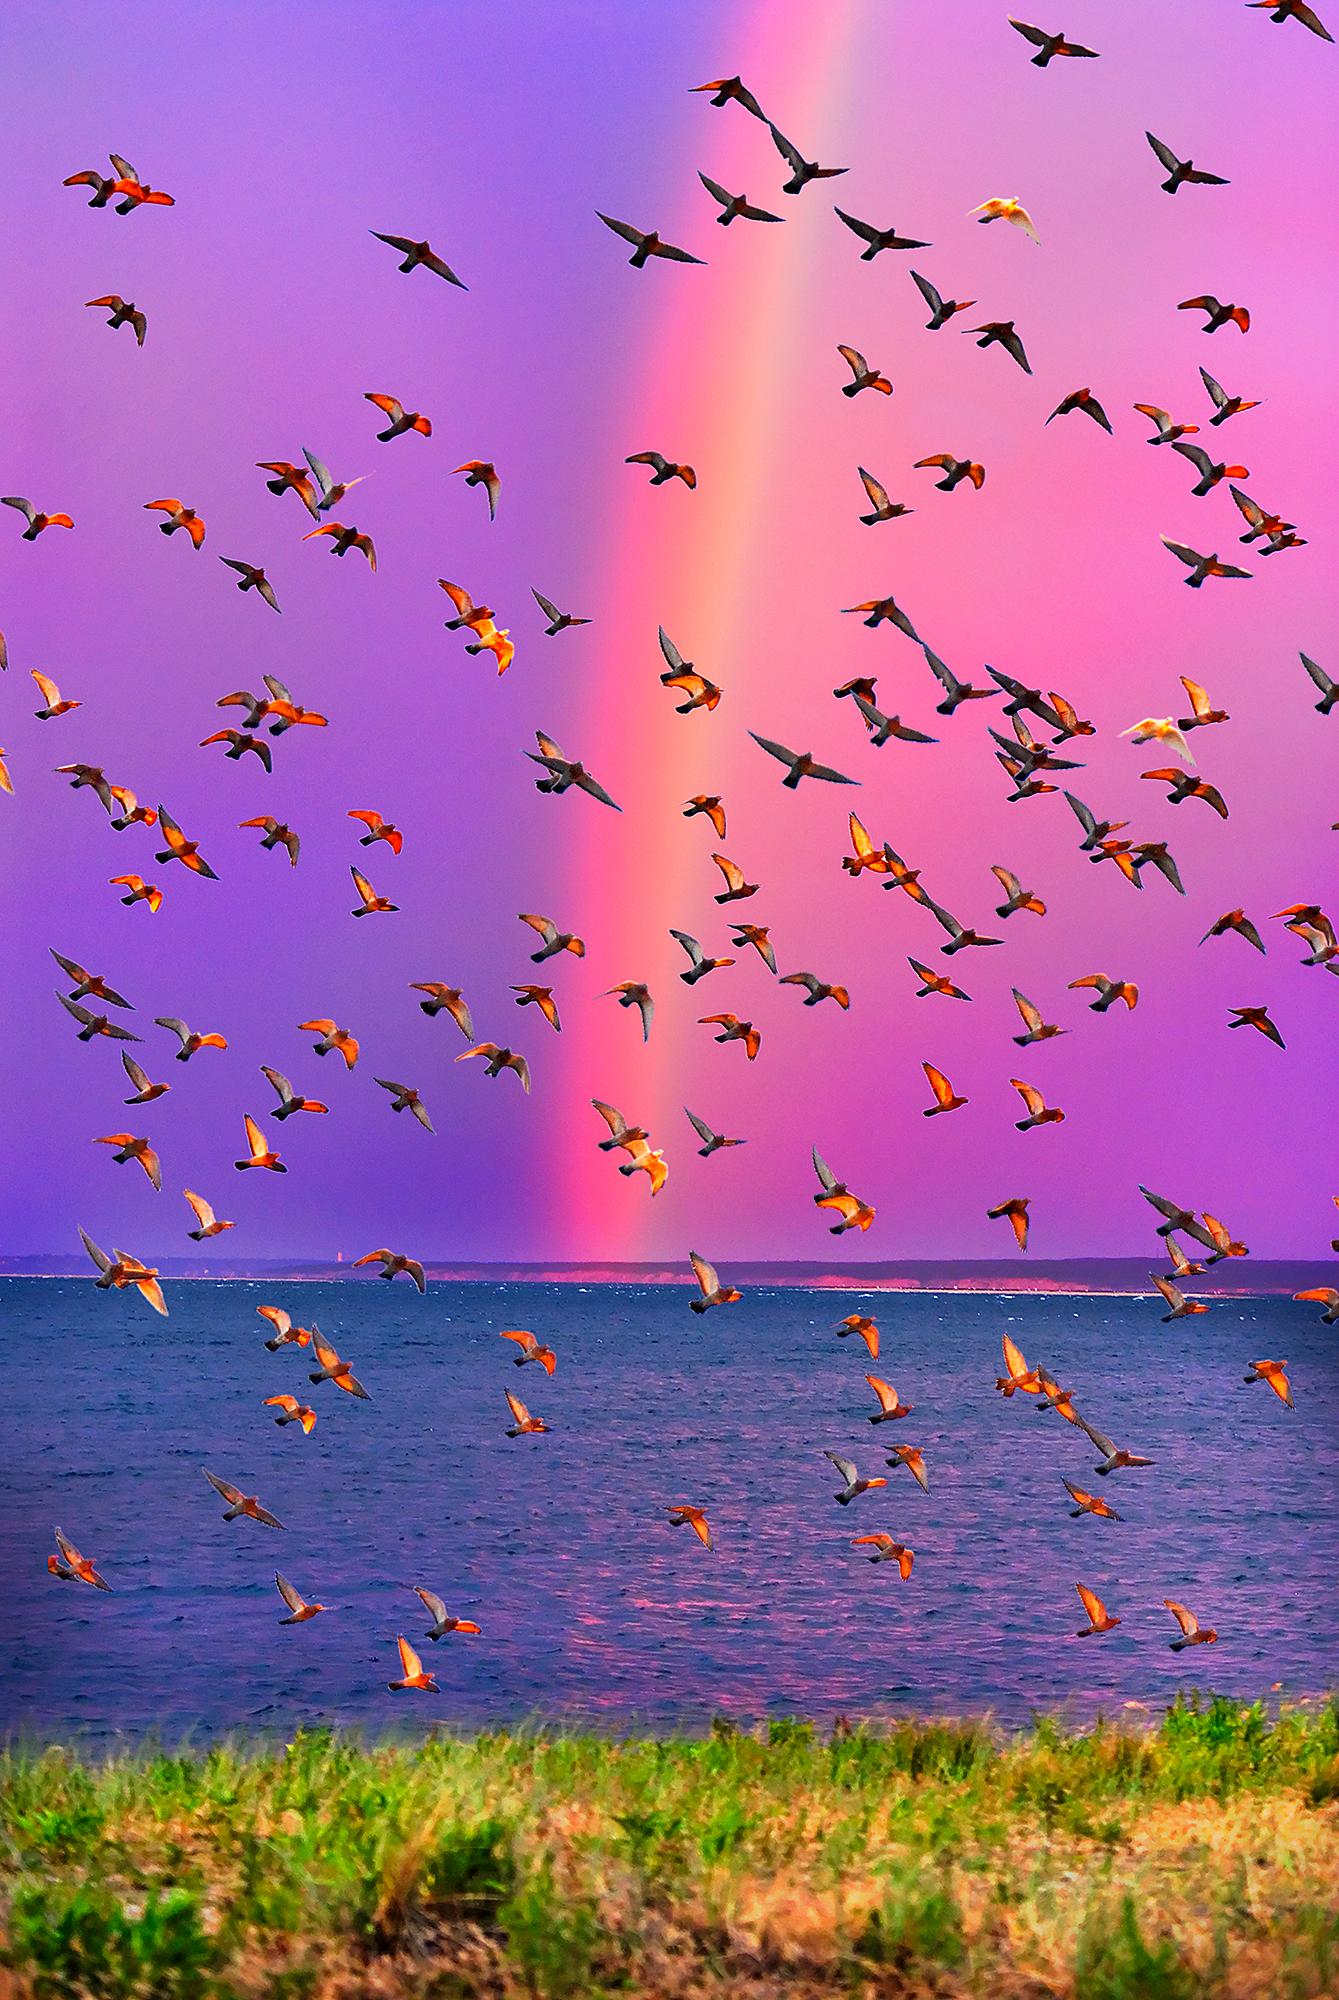 Mitchell Funk Abstract Photograph – Regenbogen in East Hampton mit einer feierlichen Vogeluhr  - Magenta Himmel